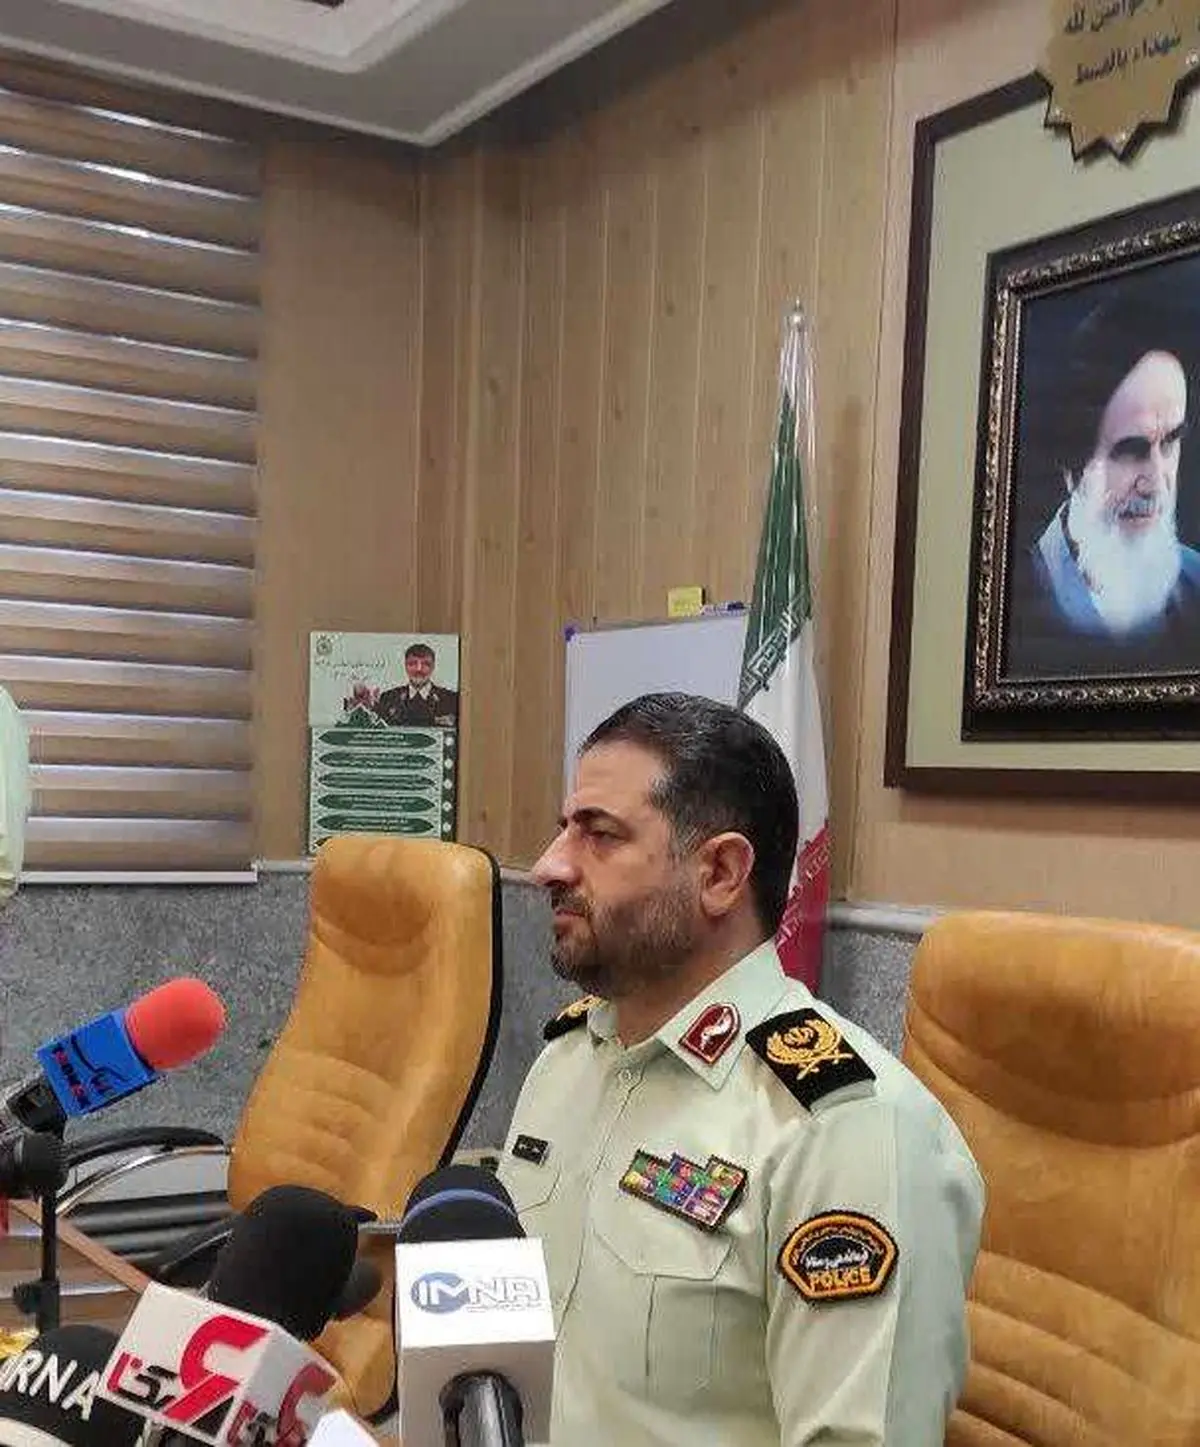  افزایش ۶۹ درصدی آمار متلاشی شدن باندهای سرقت در استان کرمانشاه

